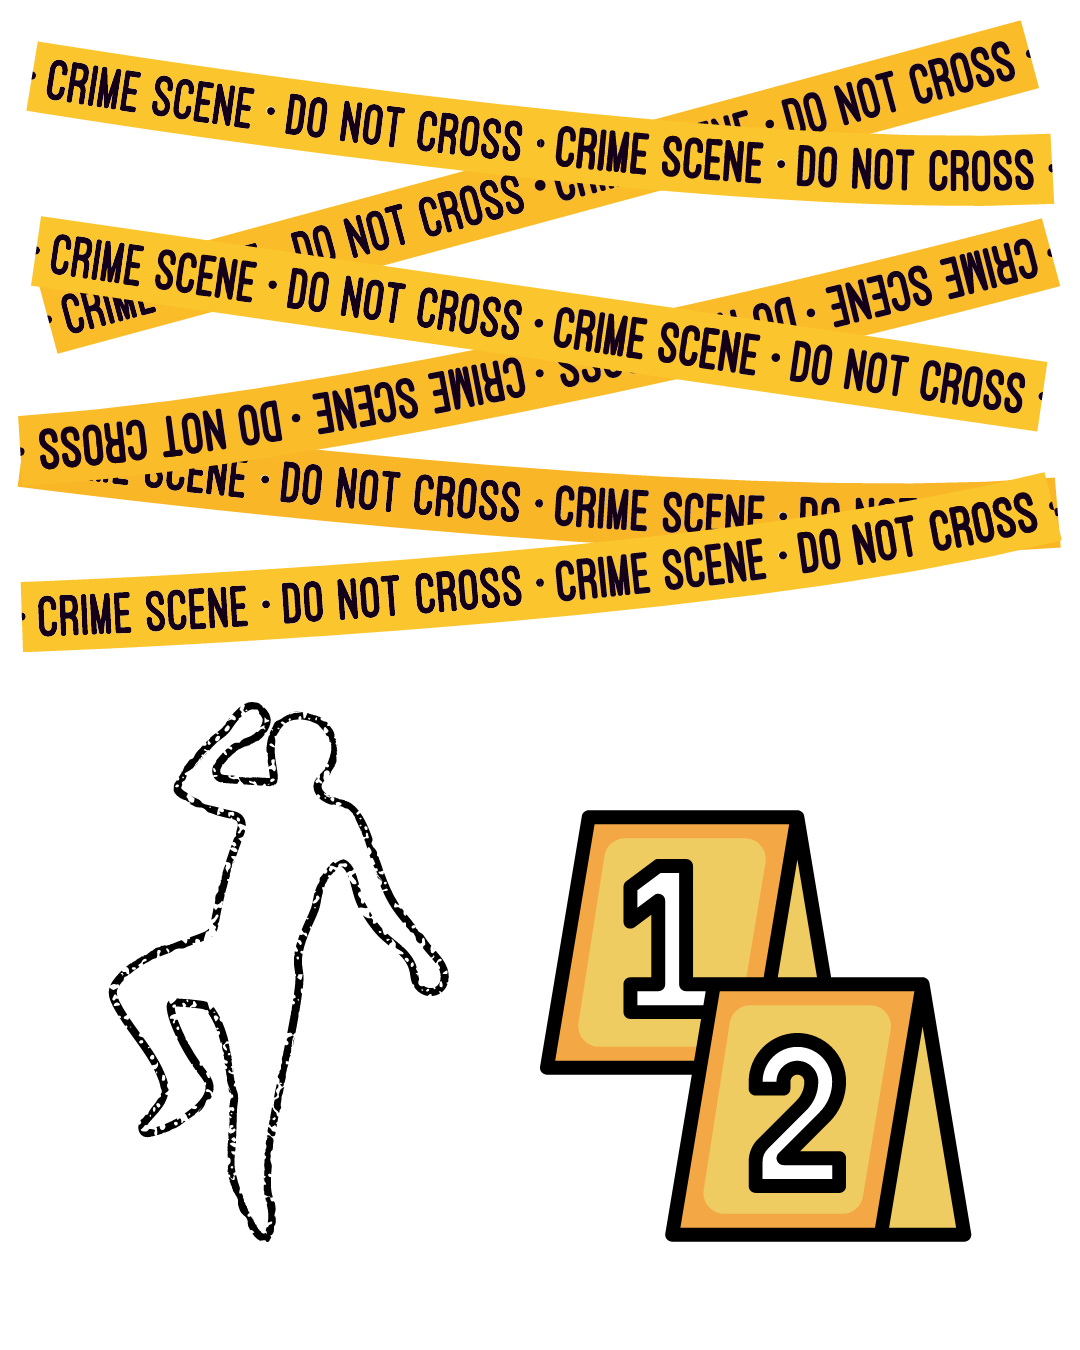 7 Steps Of A Crime Scene Investigation